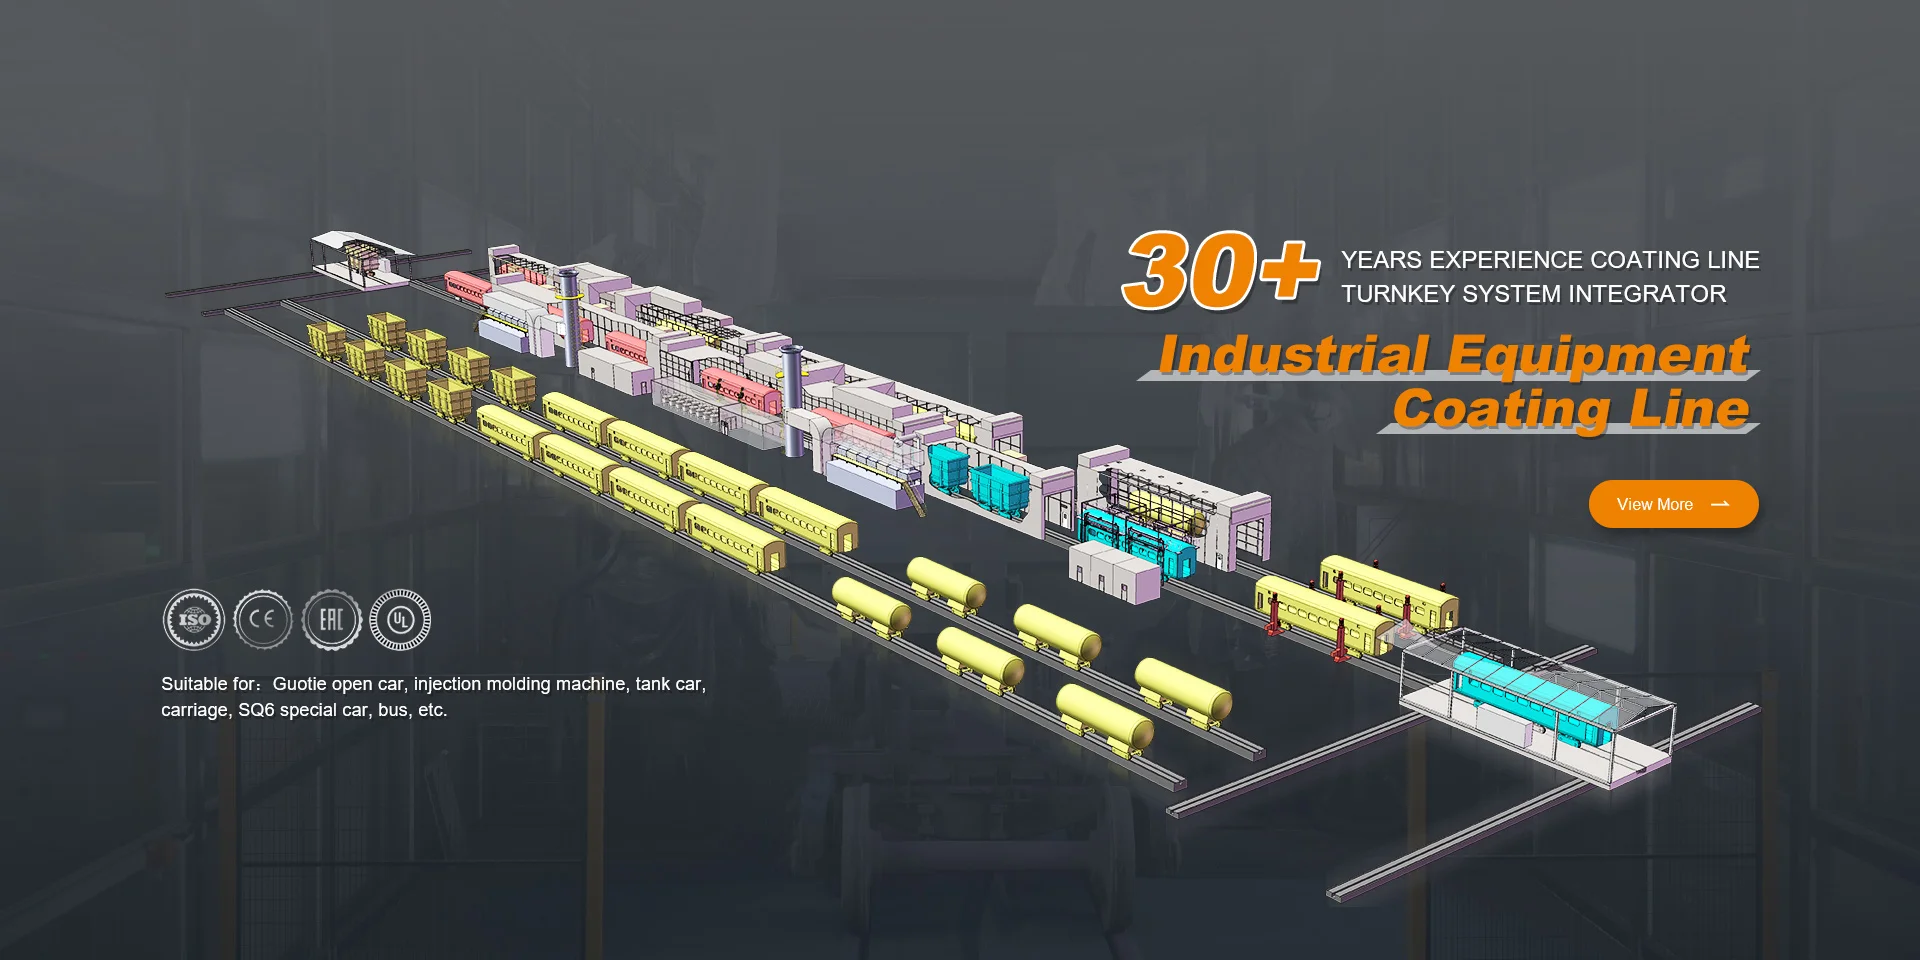 Industrial Equipment Coating Line